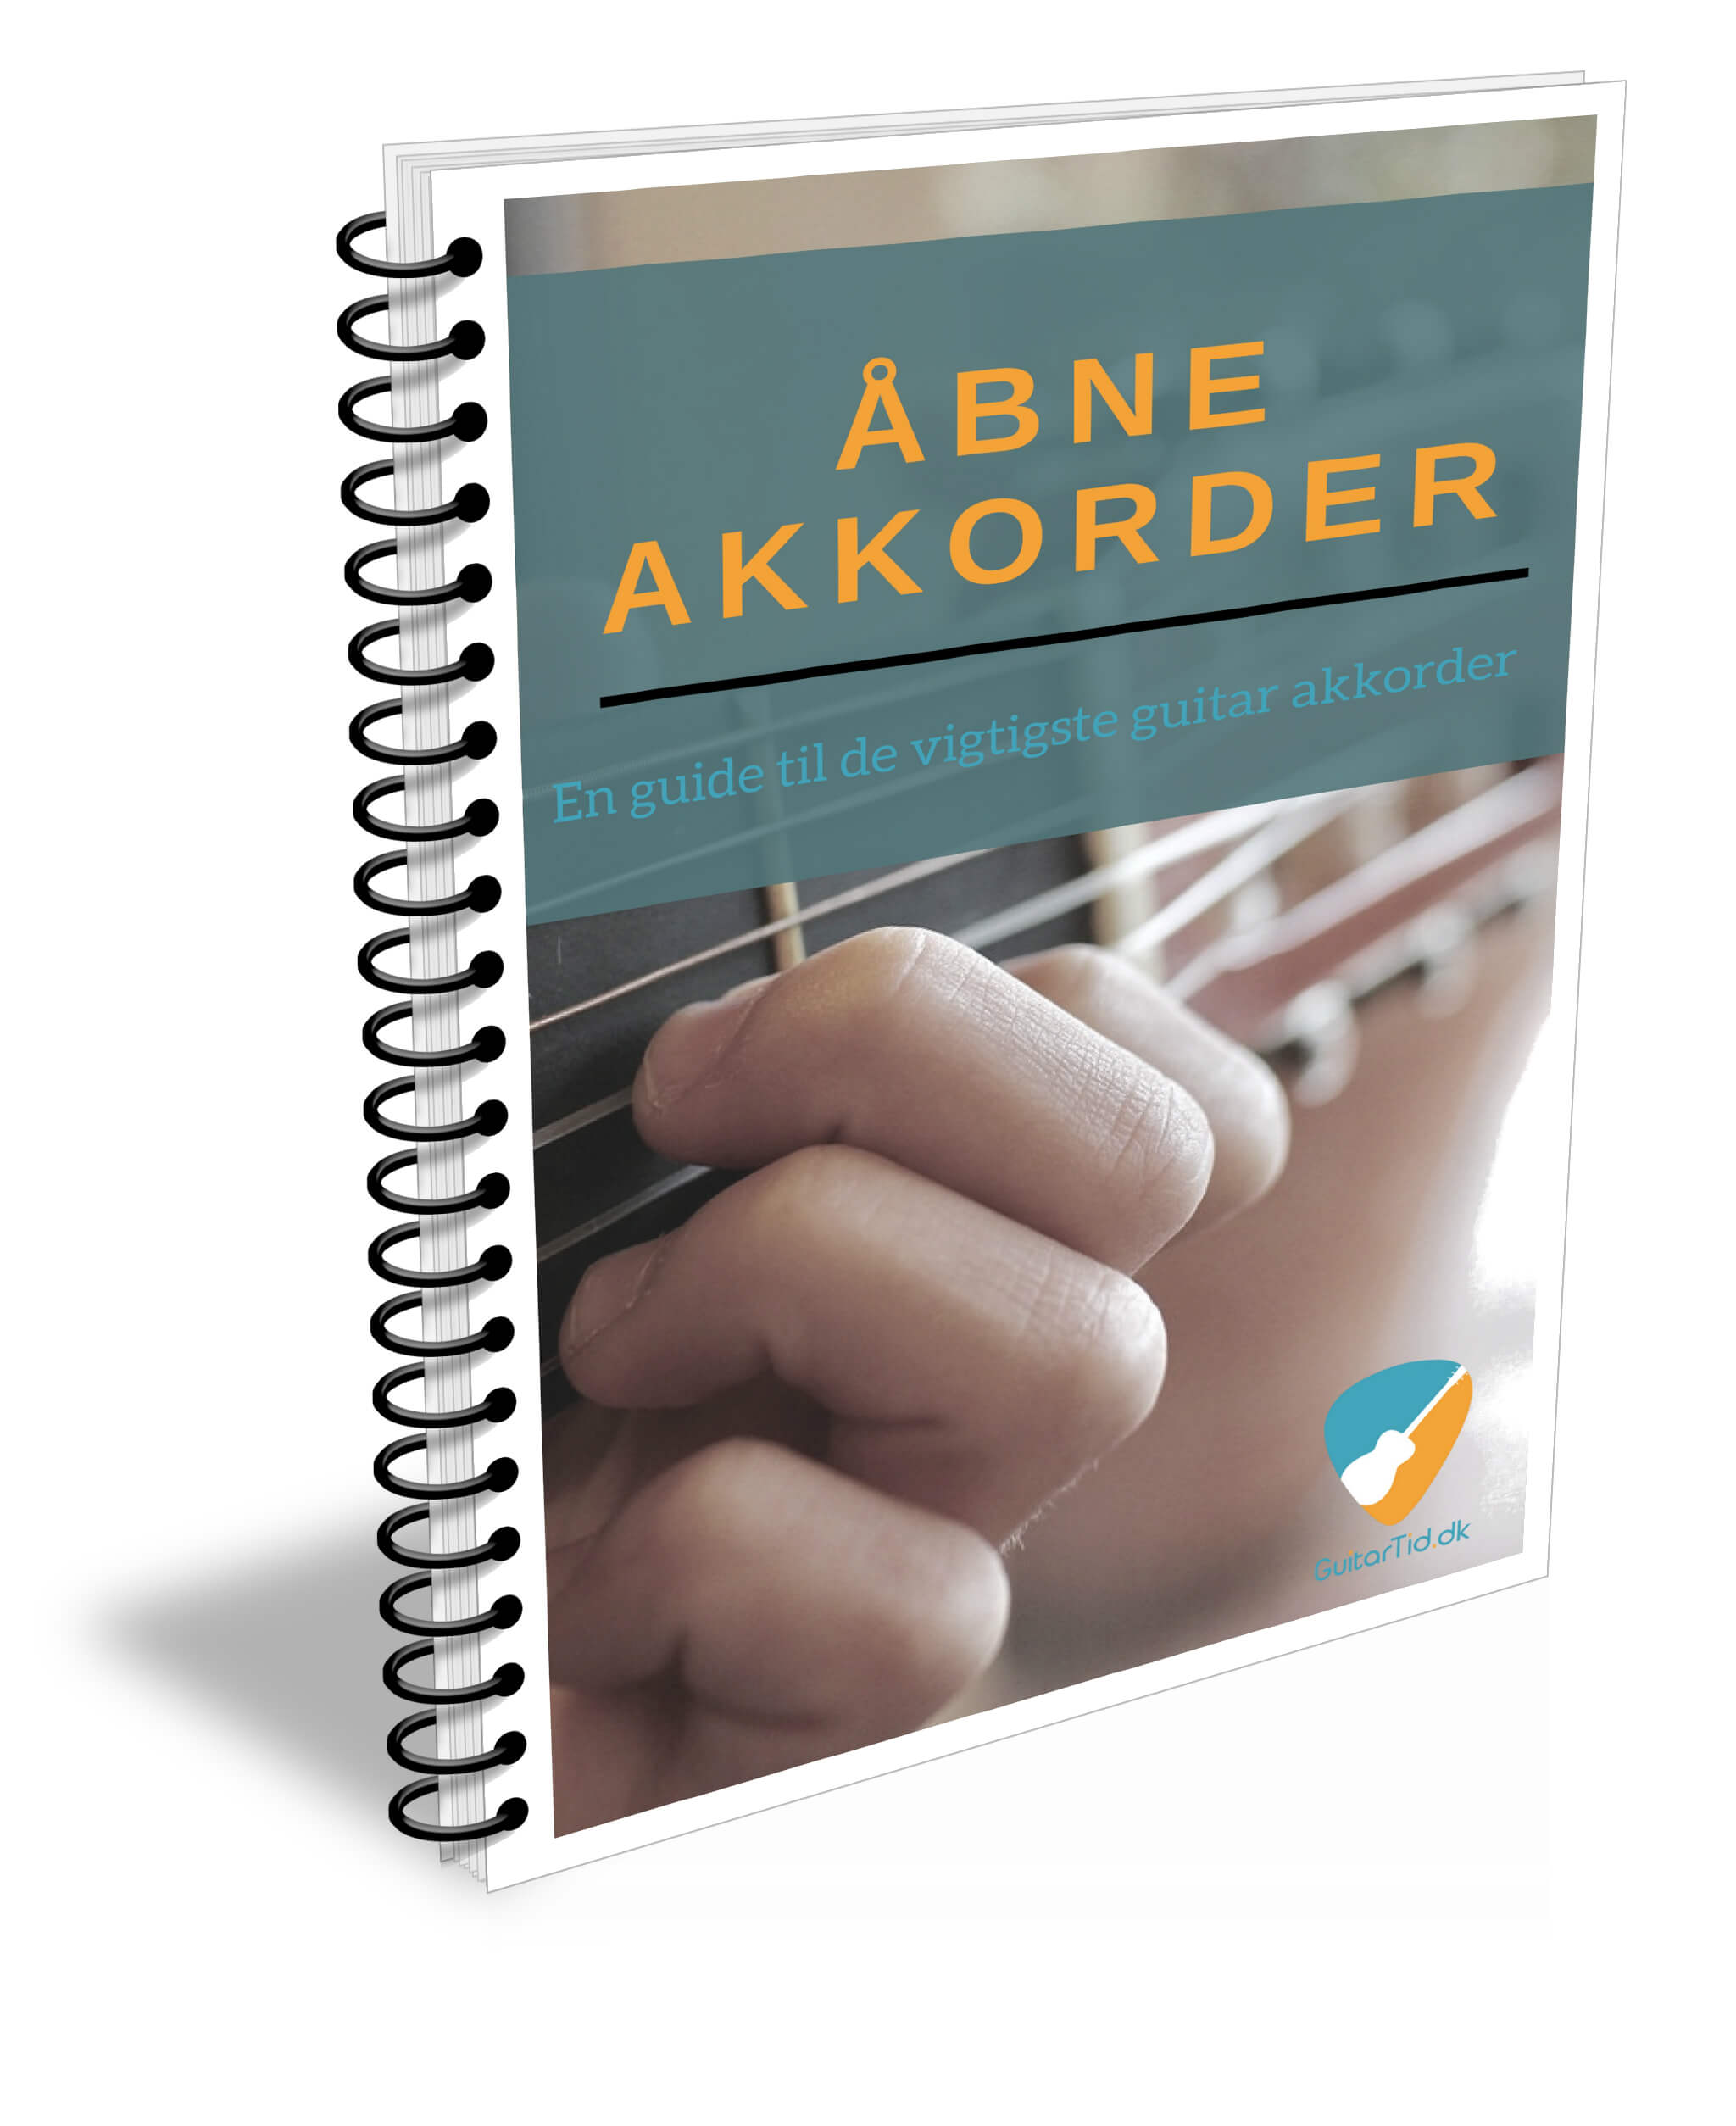 billede af e-bogen Åbne Akkorder